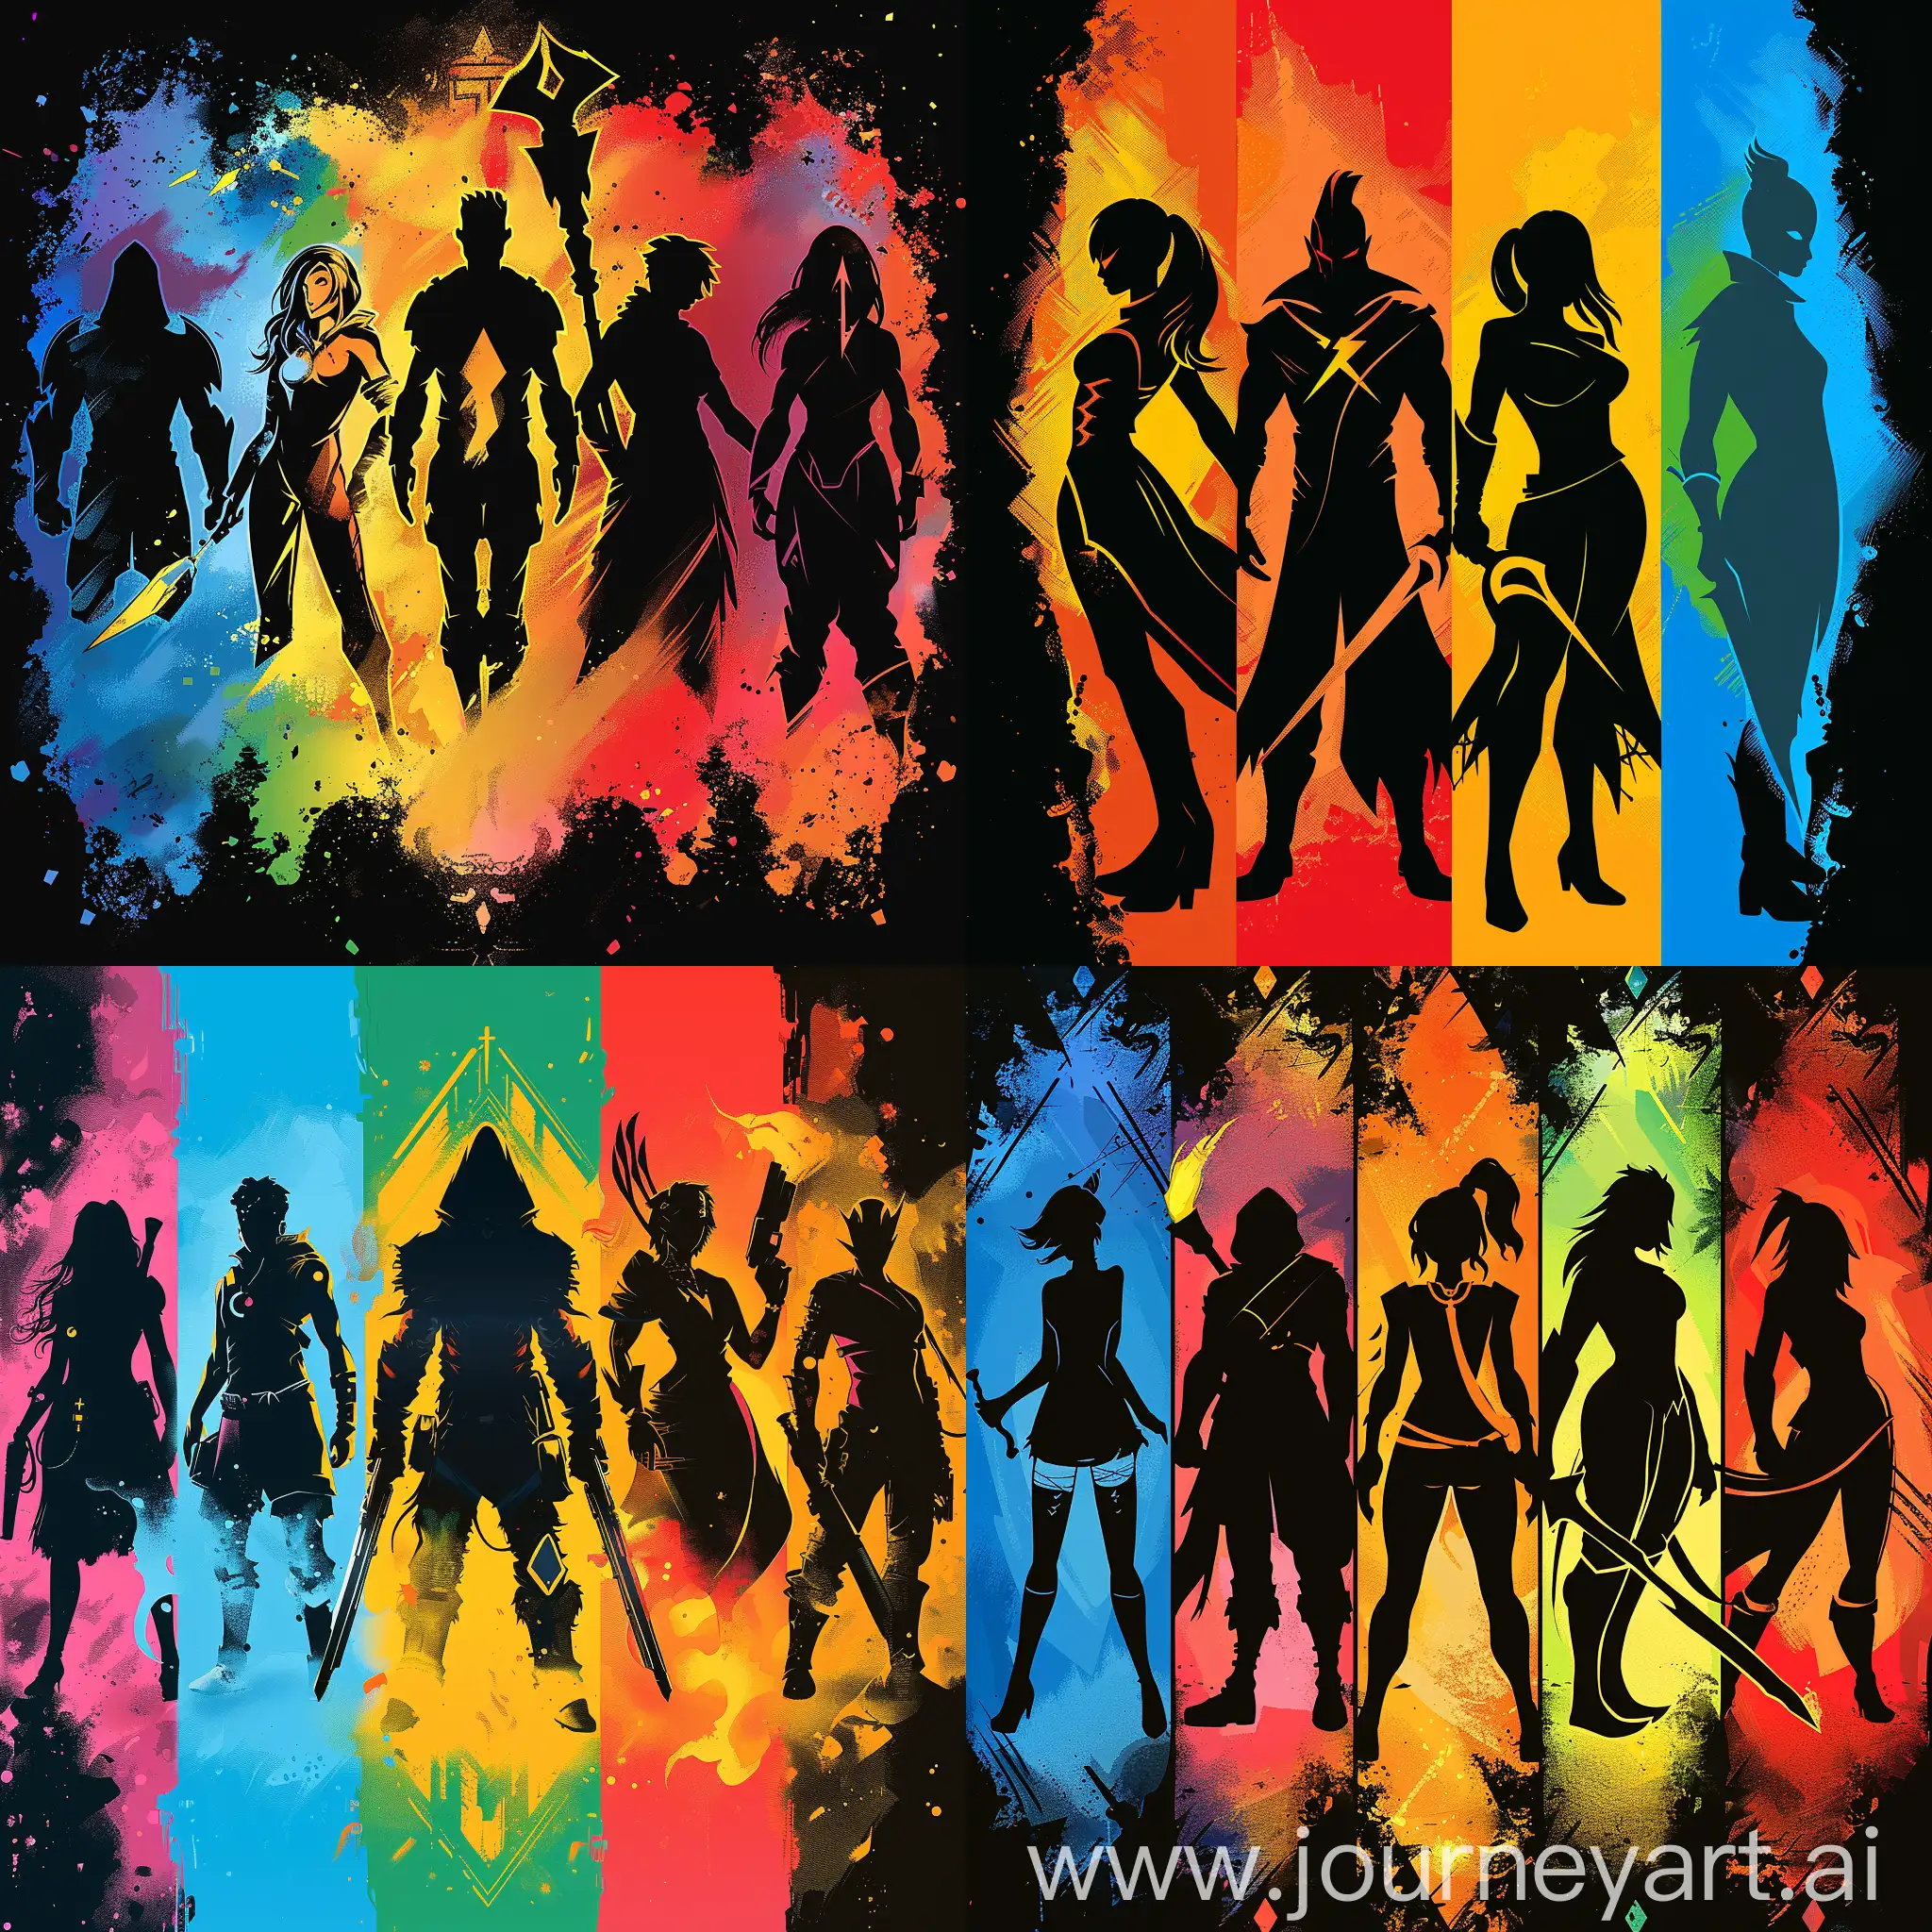 https://i.postimg.cc/kXCbFWFc/1710709861734-3.png cartoon::1.2, Пять силуэтов персонажей из разных видеоигр, 5 персонажей каждый из которых расположен на красочном фоне, --s 200